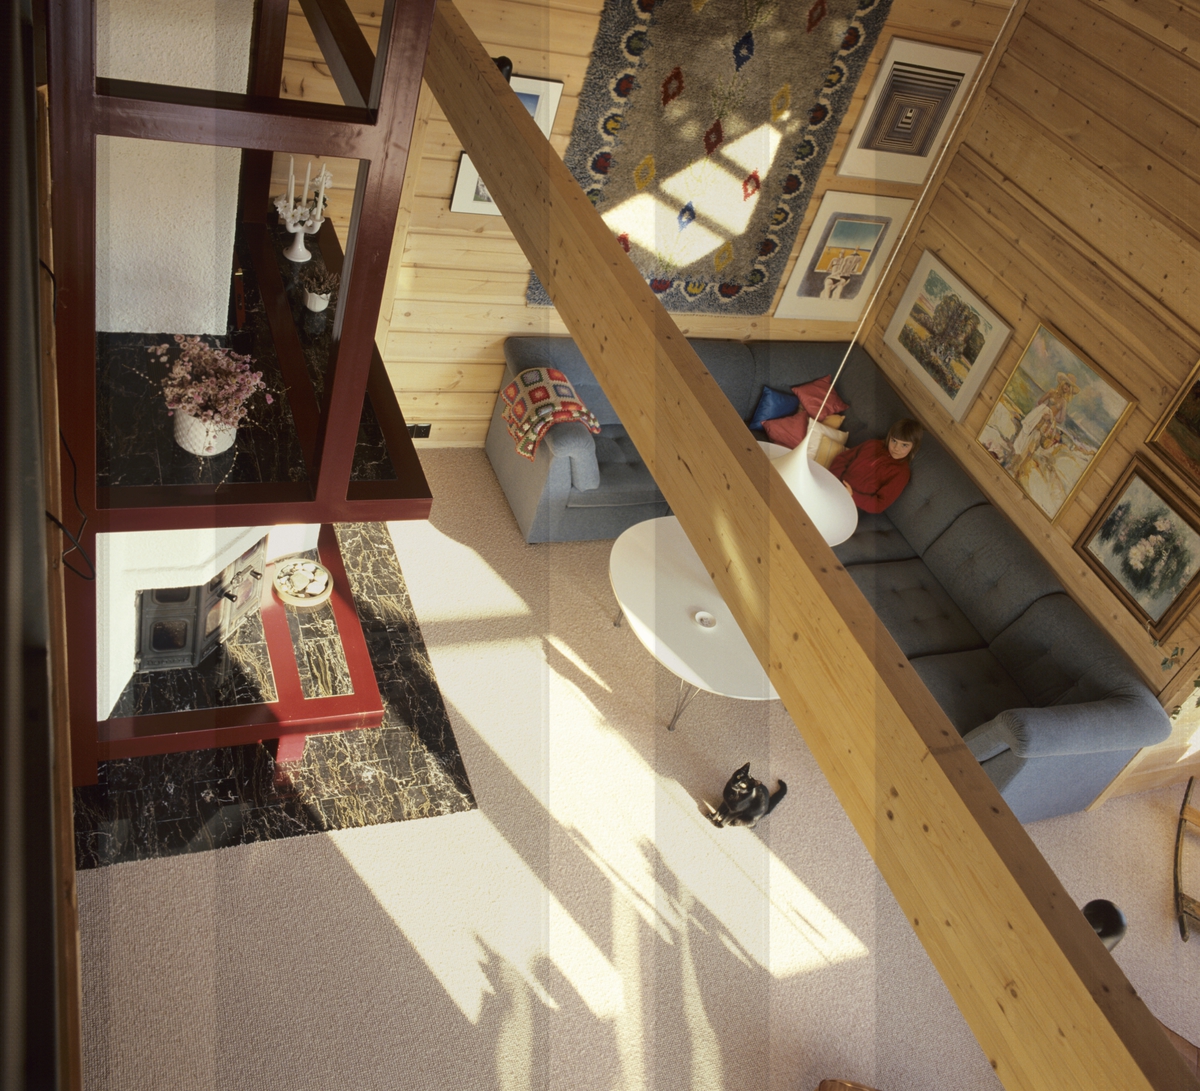 Stue med et sofahjørne, peis, veggteppe, lampe, bord og malerier på veggen, sett ovenfra i et hus. llustrasjonsbilde fra Bonytt 1986.